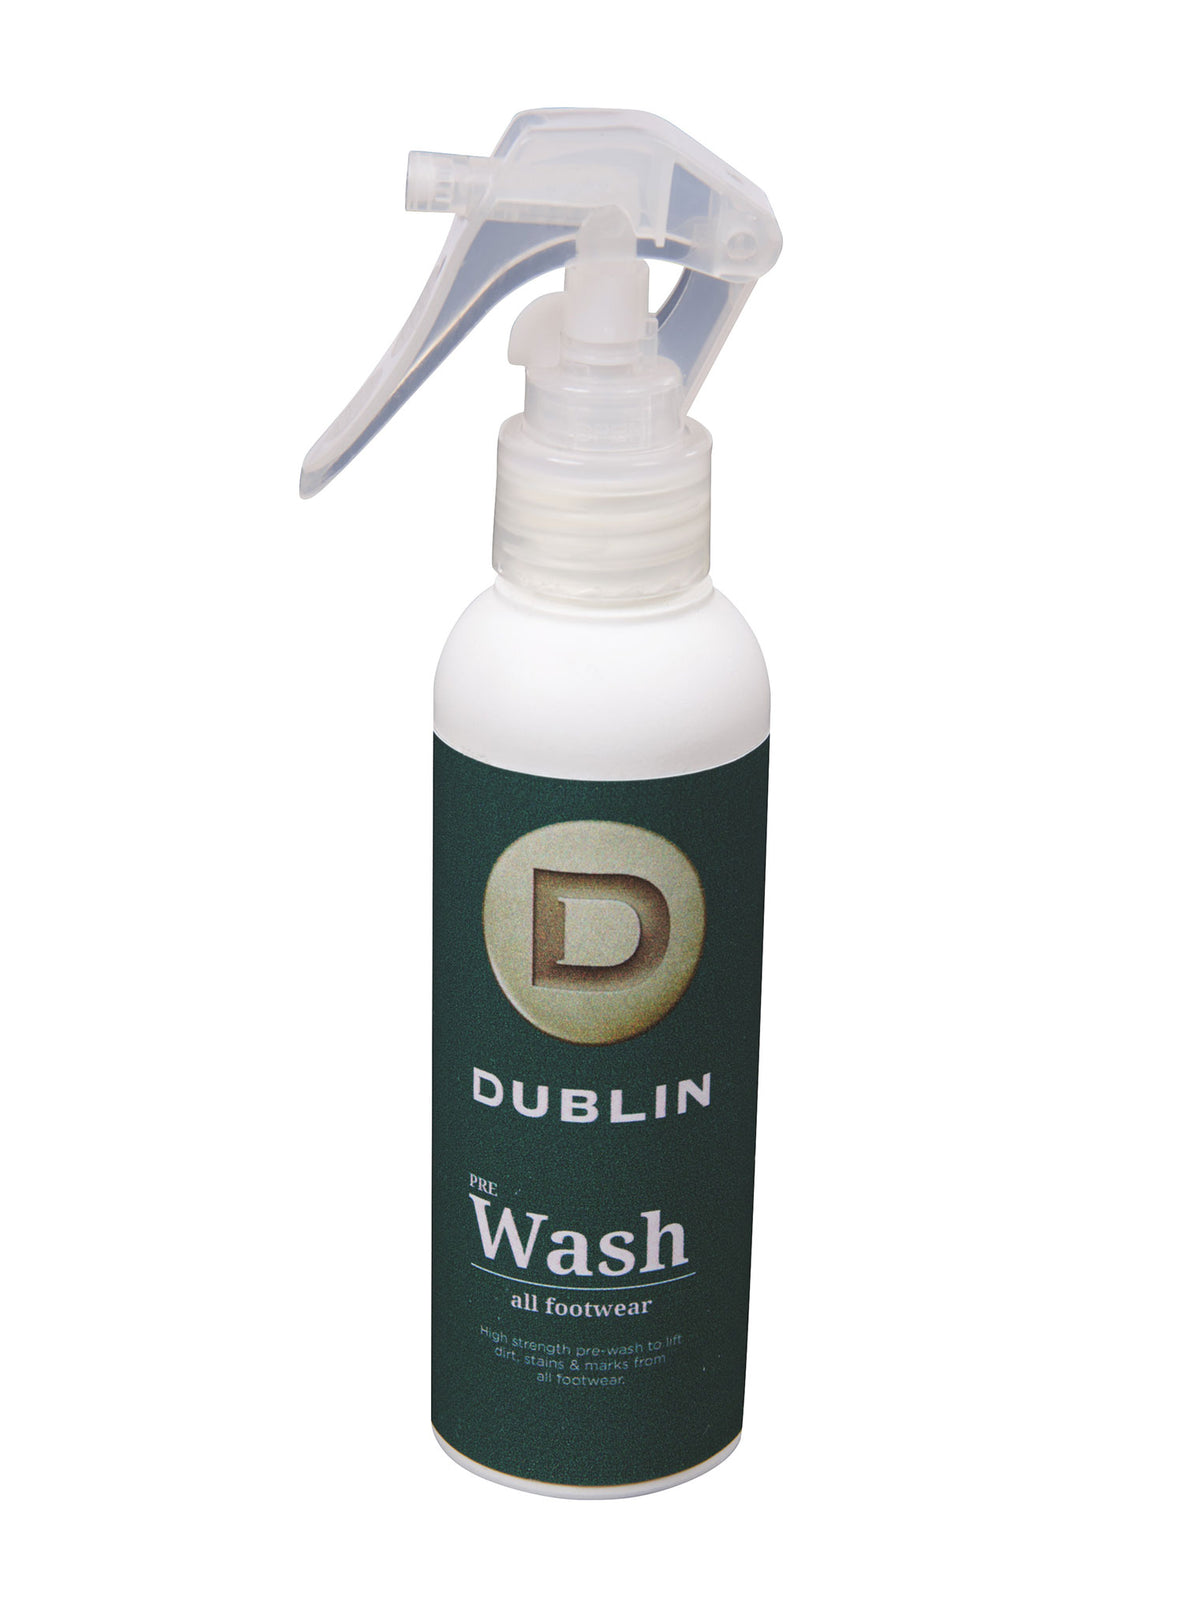 Footwear Pre Wash Spray by Dublin 